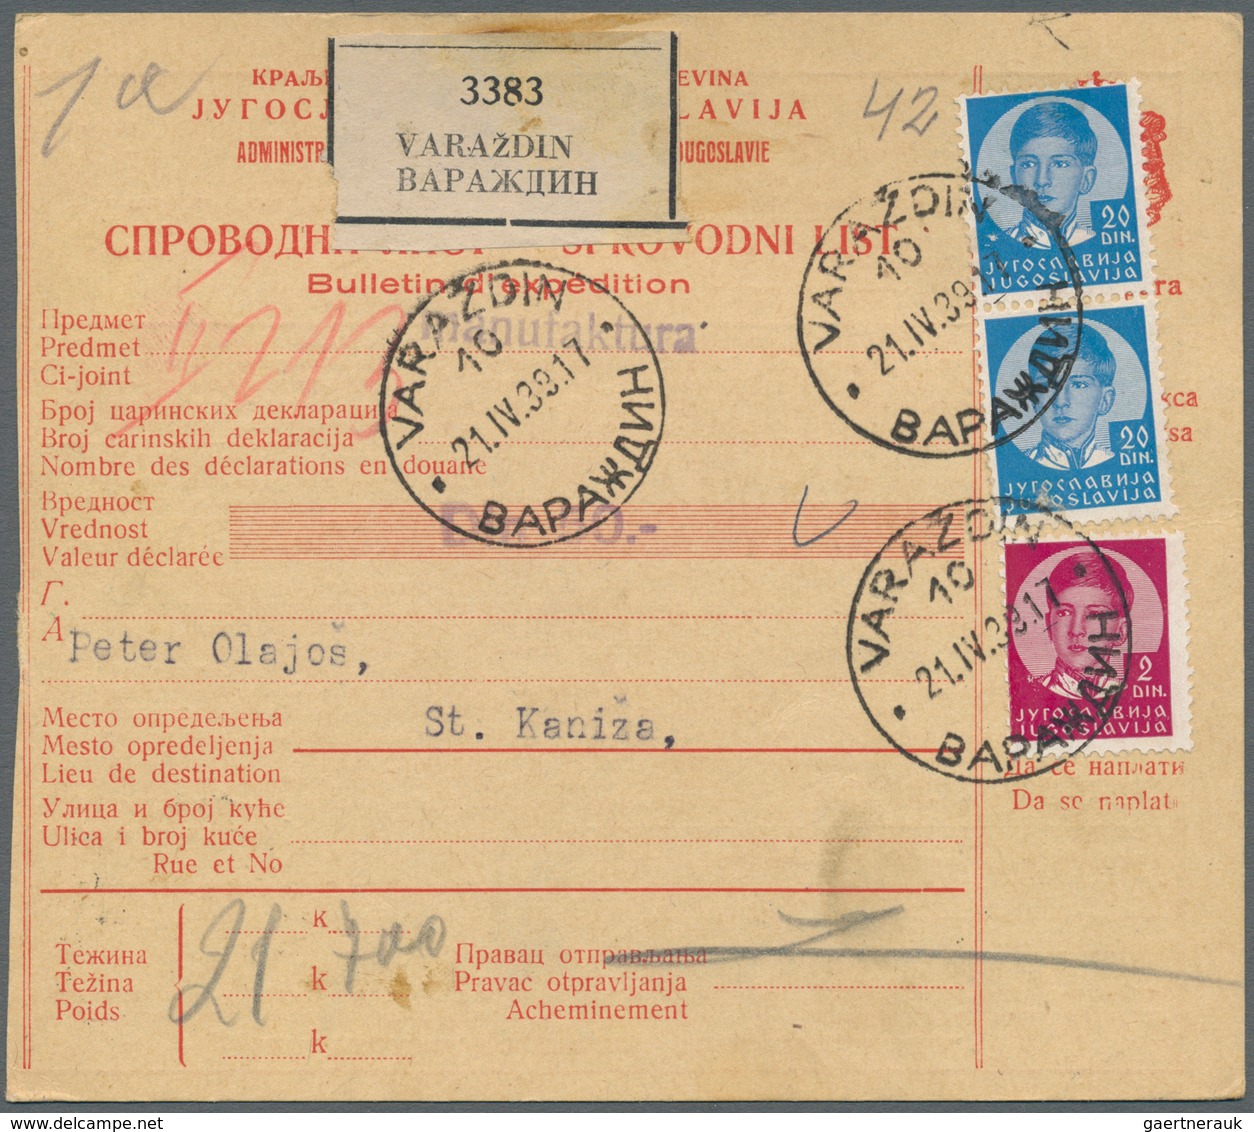 Jugoslawien: 1938/1941 (ca.), unglaublicher Bestand von ca. 1.800 Paketkarten mit sehr vielen unters